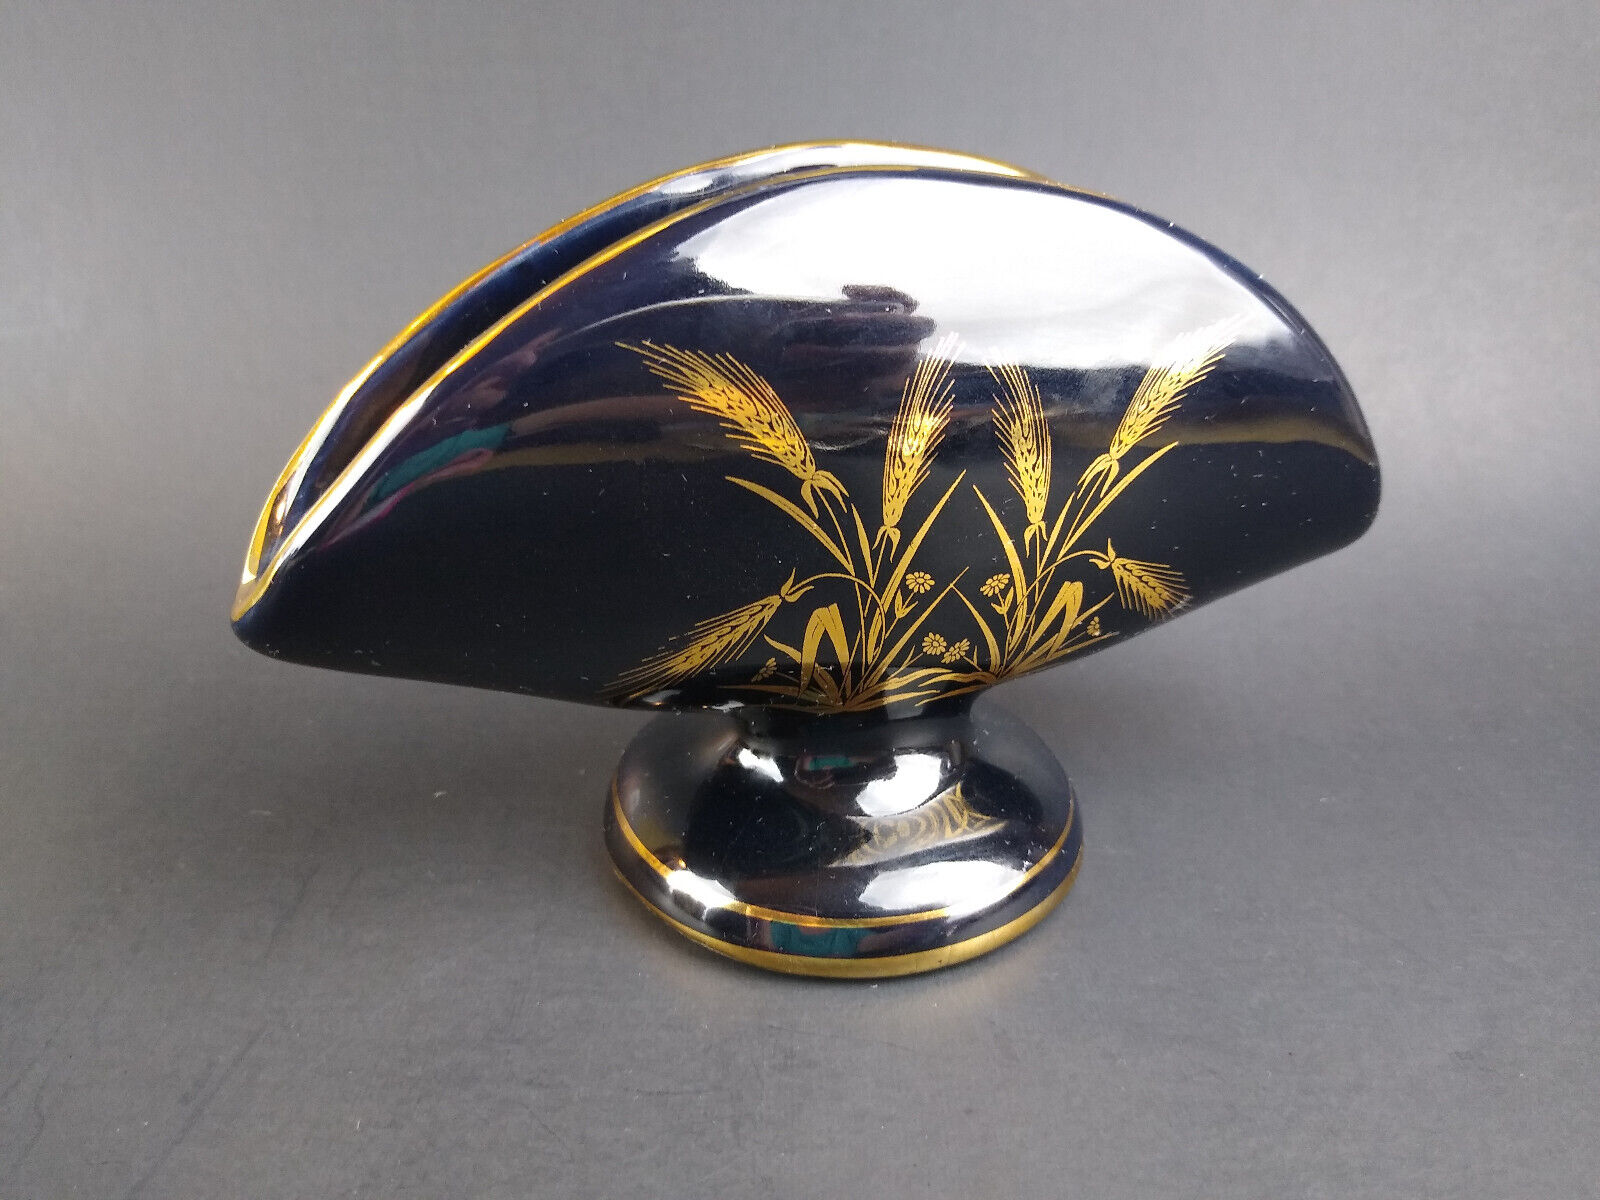 Vintage Napkin Holder Vase Hand Made in Greece 24K Gold Accents Fan Shape Black